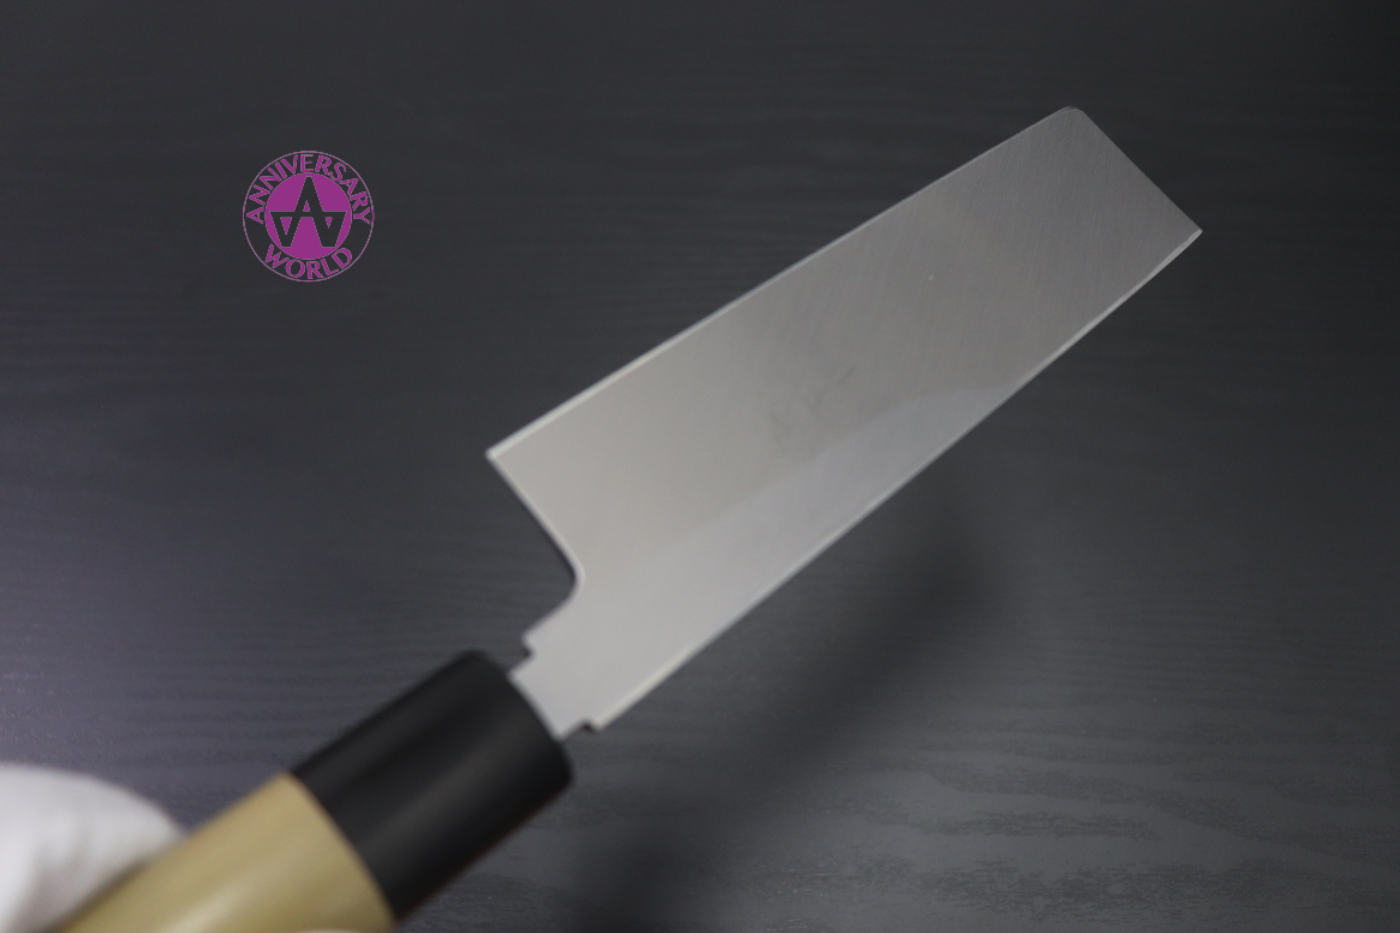 Free ship - Thương hiệu Masamoto Hongasumi Thép trắng No.2 Dao chuyên dụng rau củ quả Usuba (hình dao vuông góc) dao Nhật 180mm chuôi dao gỗ Mộc Lan